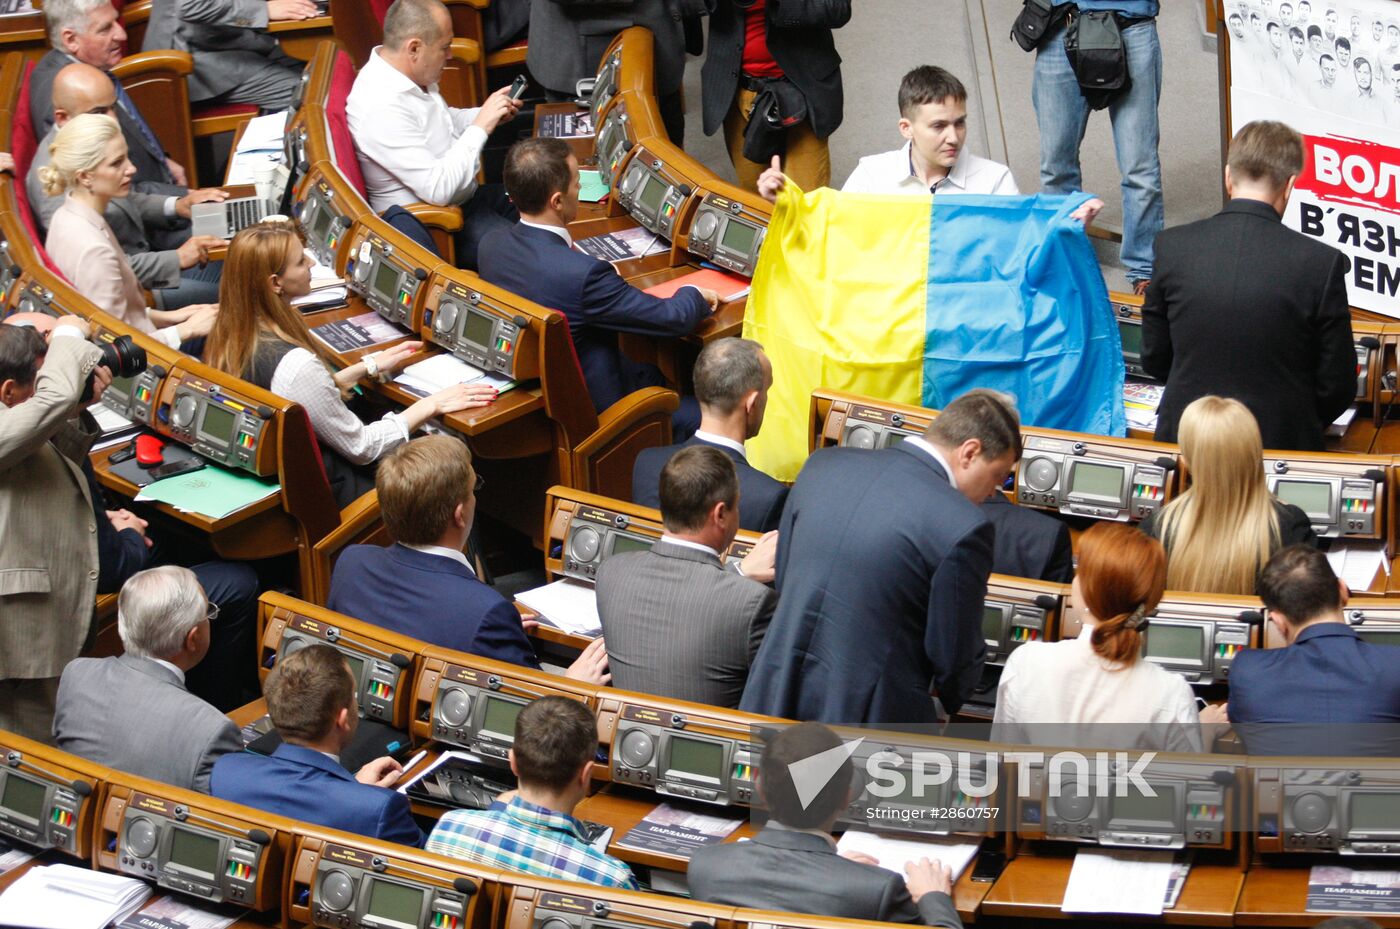 Ukraine's Verkhova Rada session